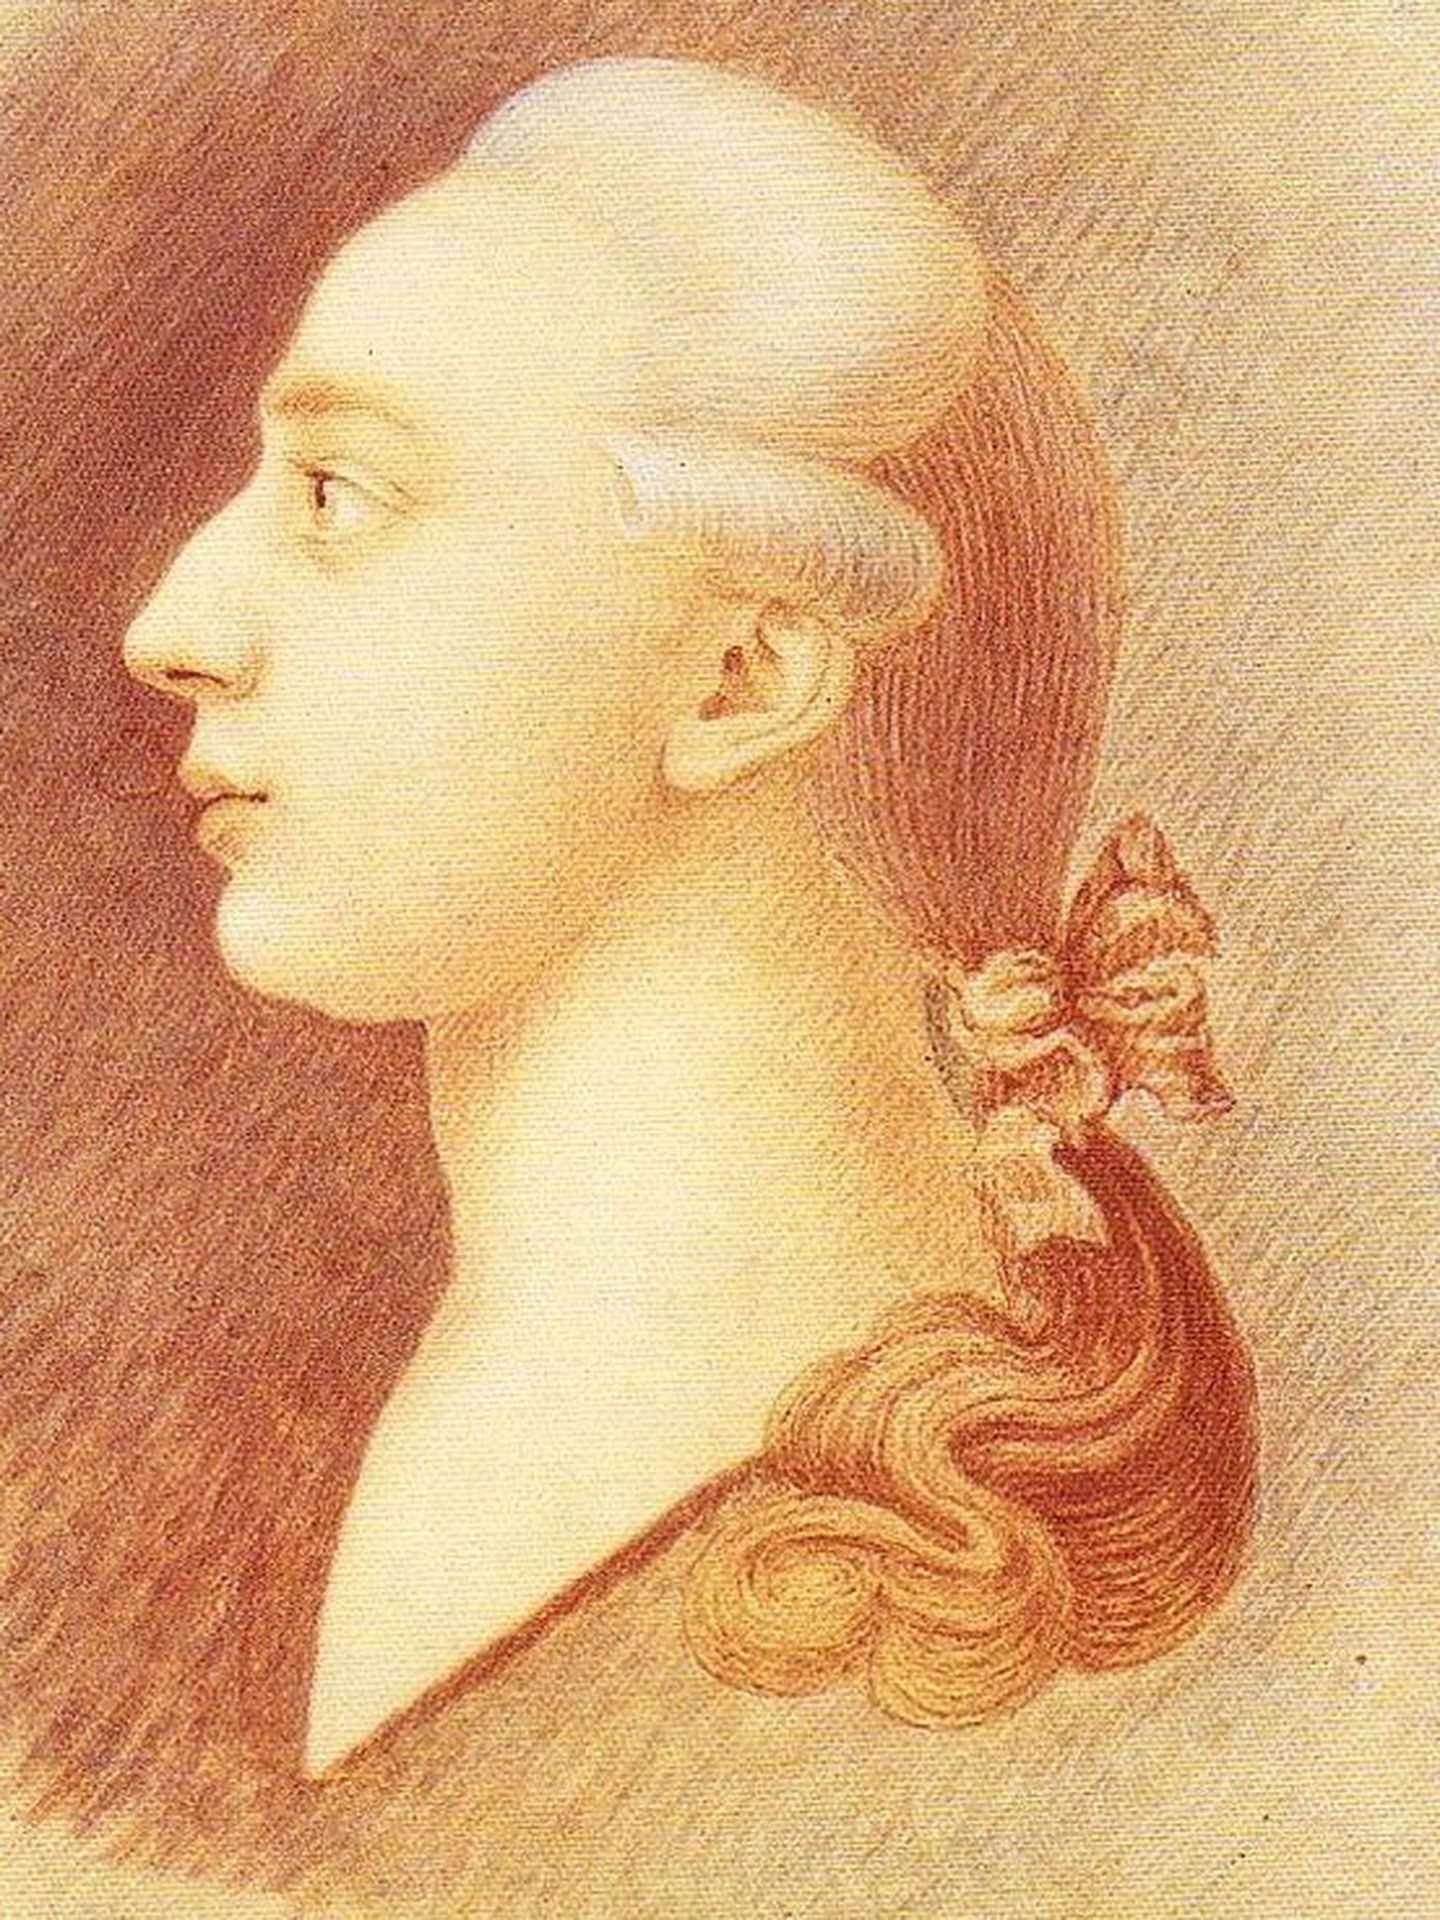 Retrato de Casanova (CC)